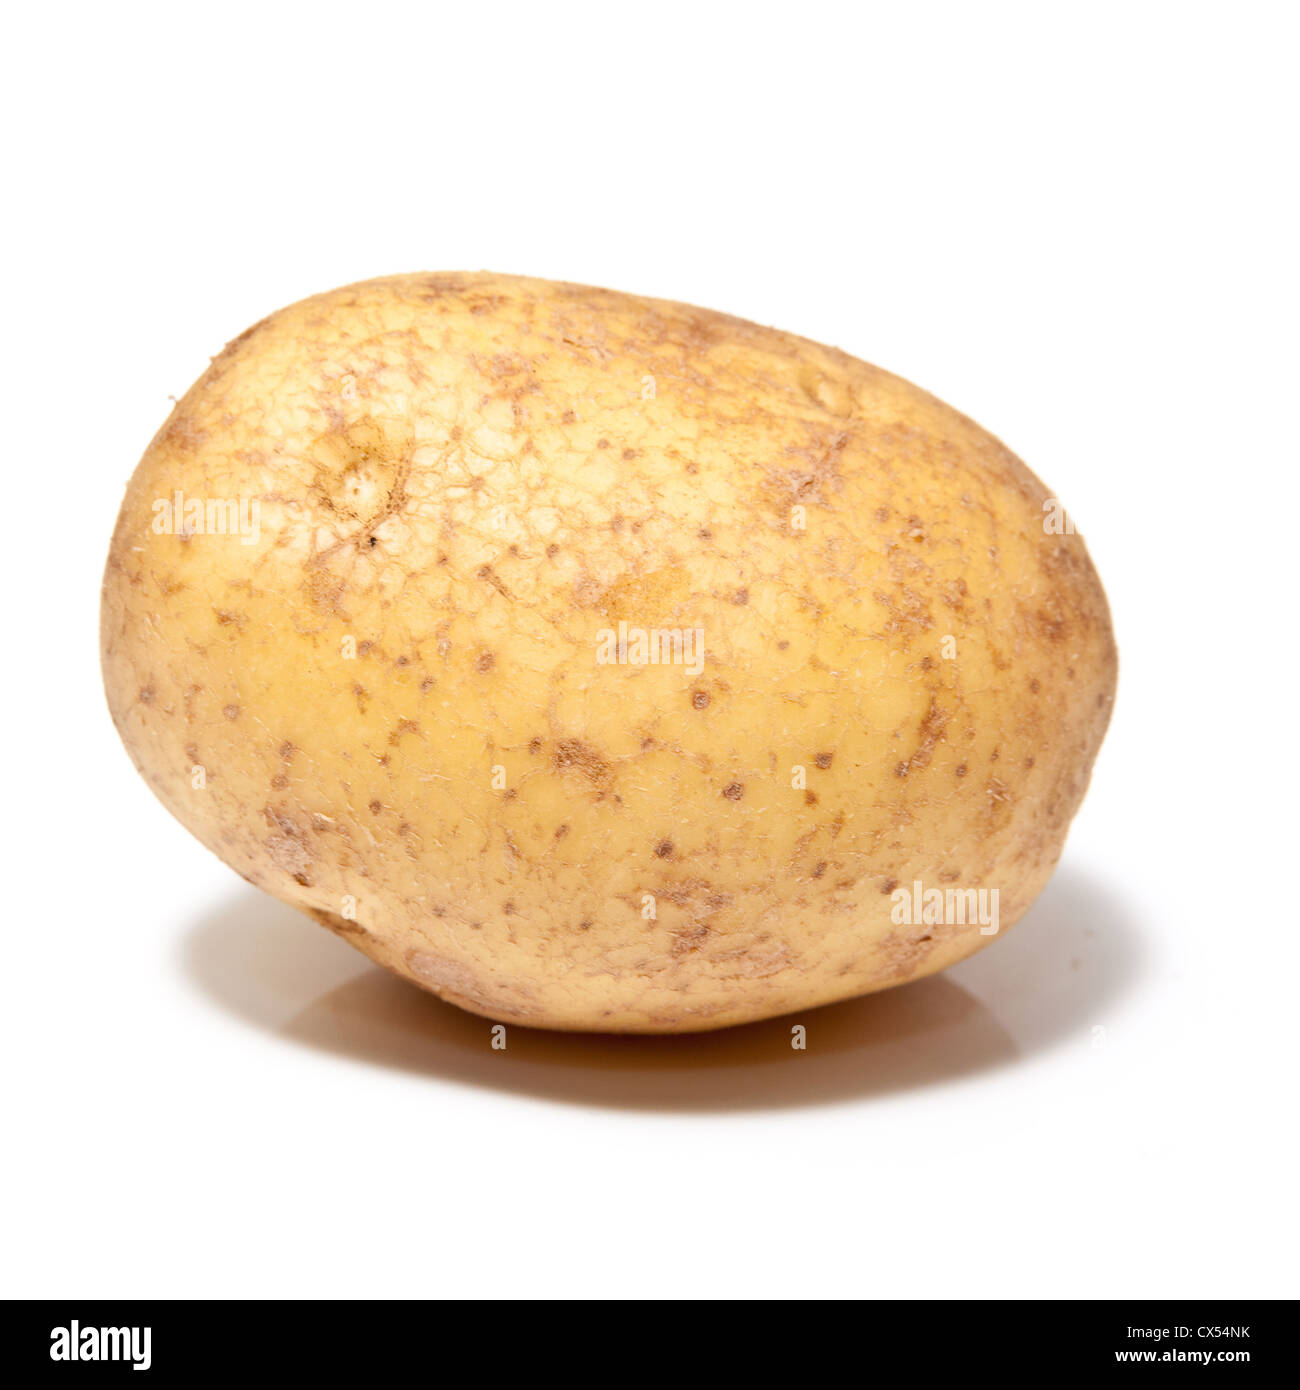 White Potato isolated on a studio background. Stock Photo